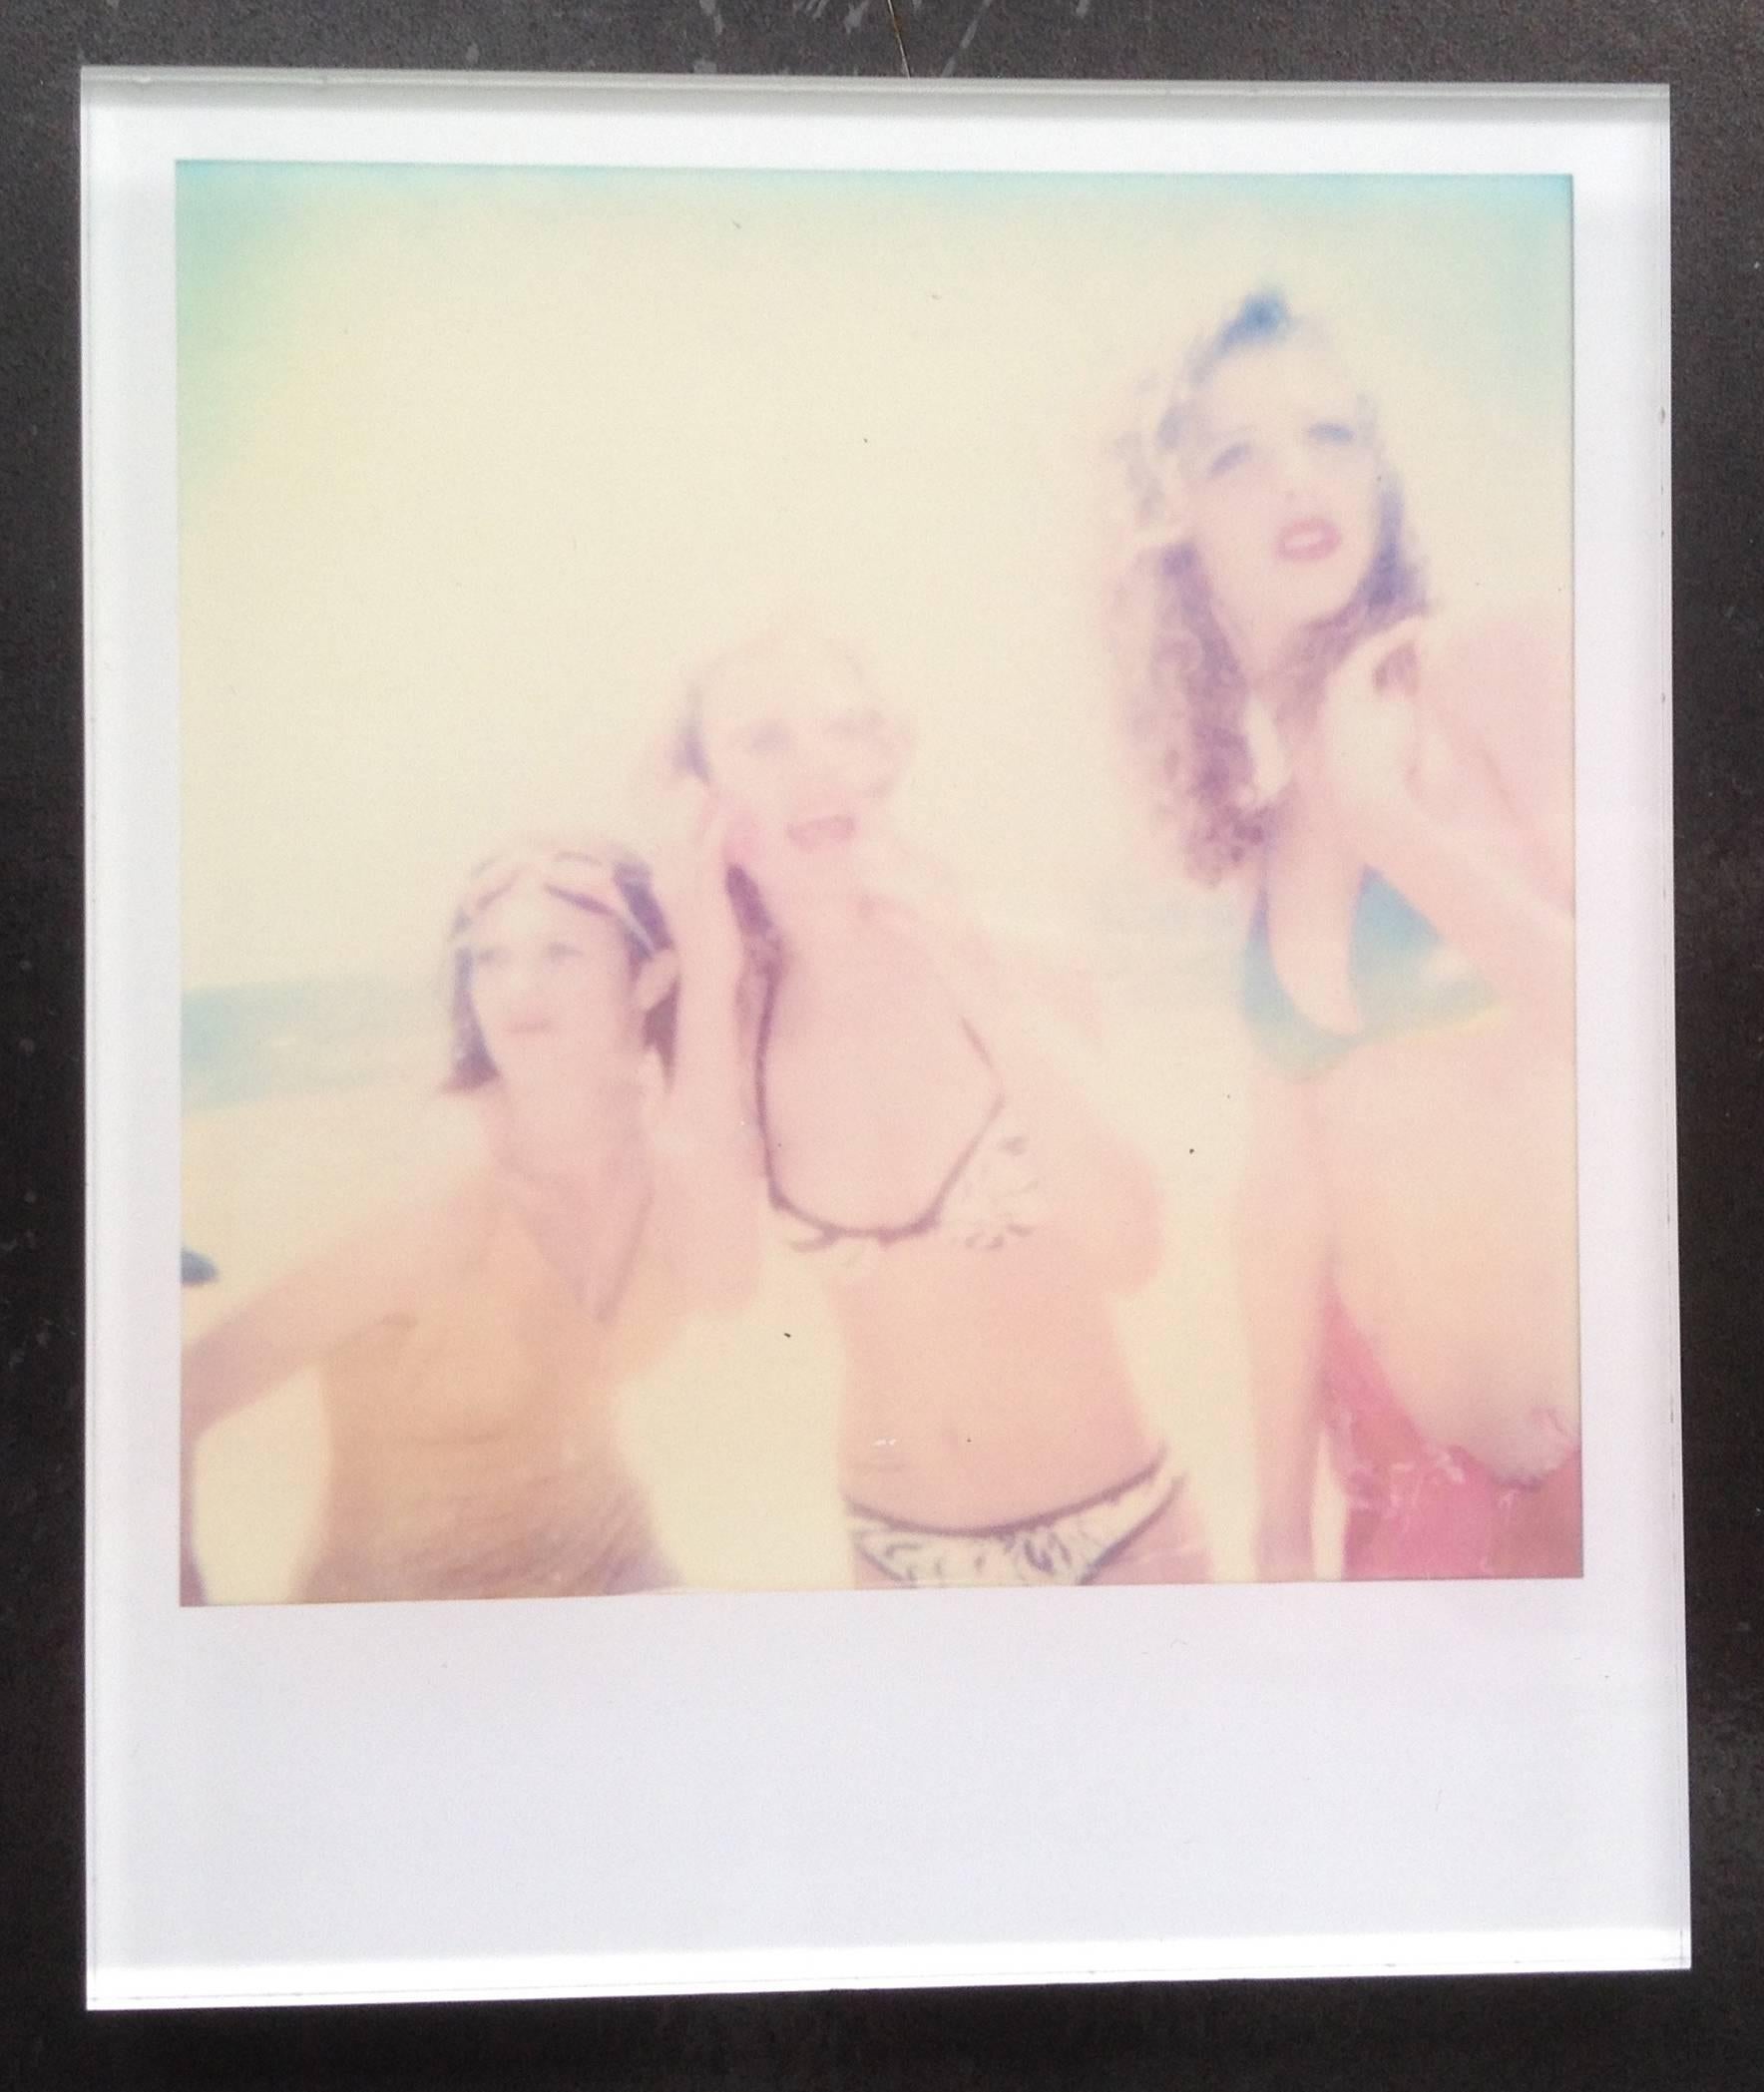 Die Minis von Stefanie Schneider
ohne Titel #2" (Beachshoot) mit Radha Mitchell, 2005
verso signiert und Signaturmarke
Digitale Lambda-Farbfotografien auf der Grundlage eines Polaroids

Offene Editionen in Polaroidgröße 1999-2013
10.7 x 8,8cm (Bild